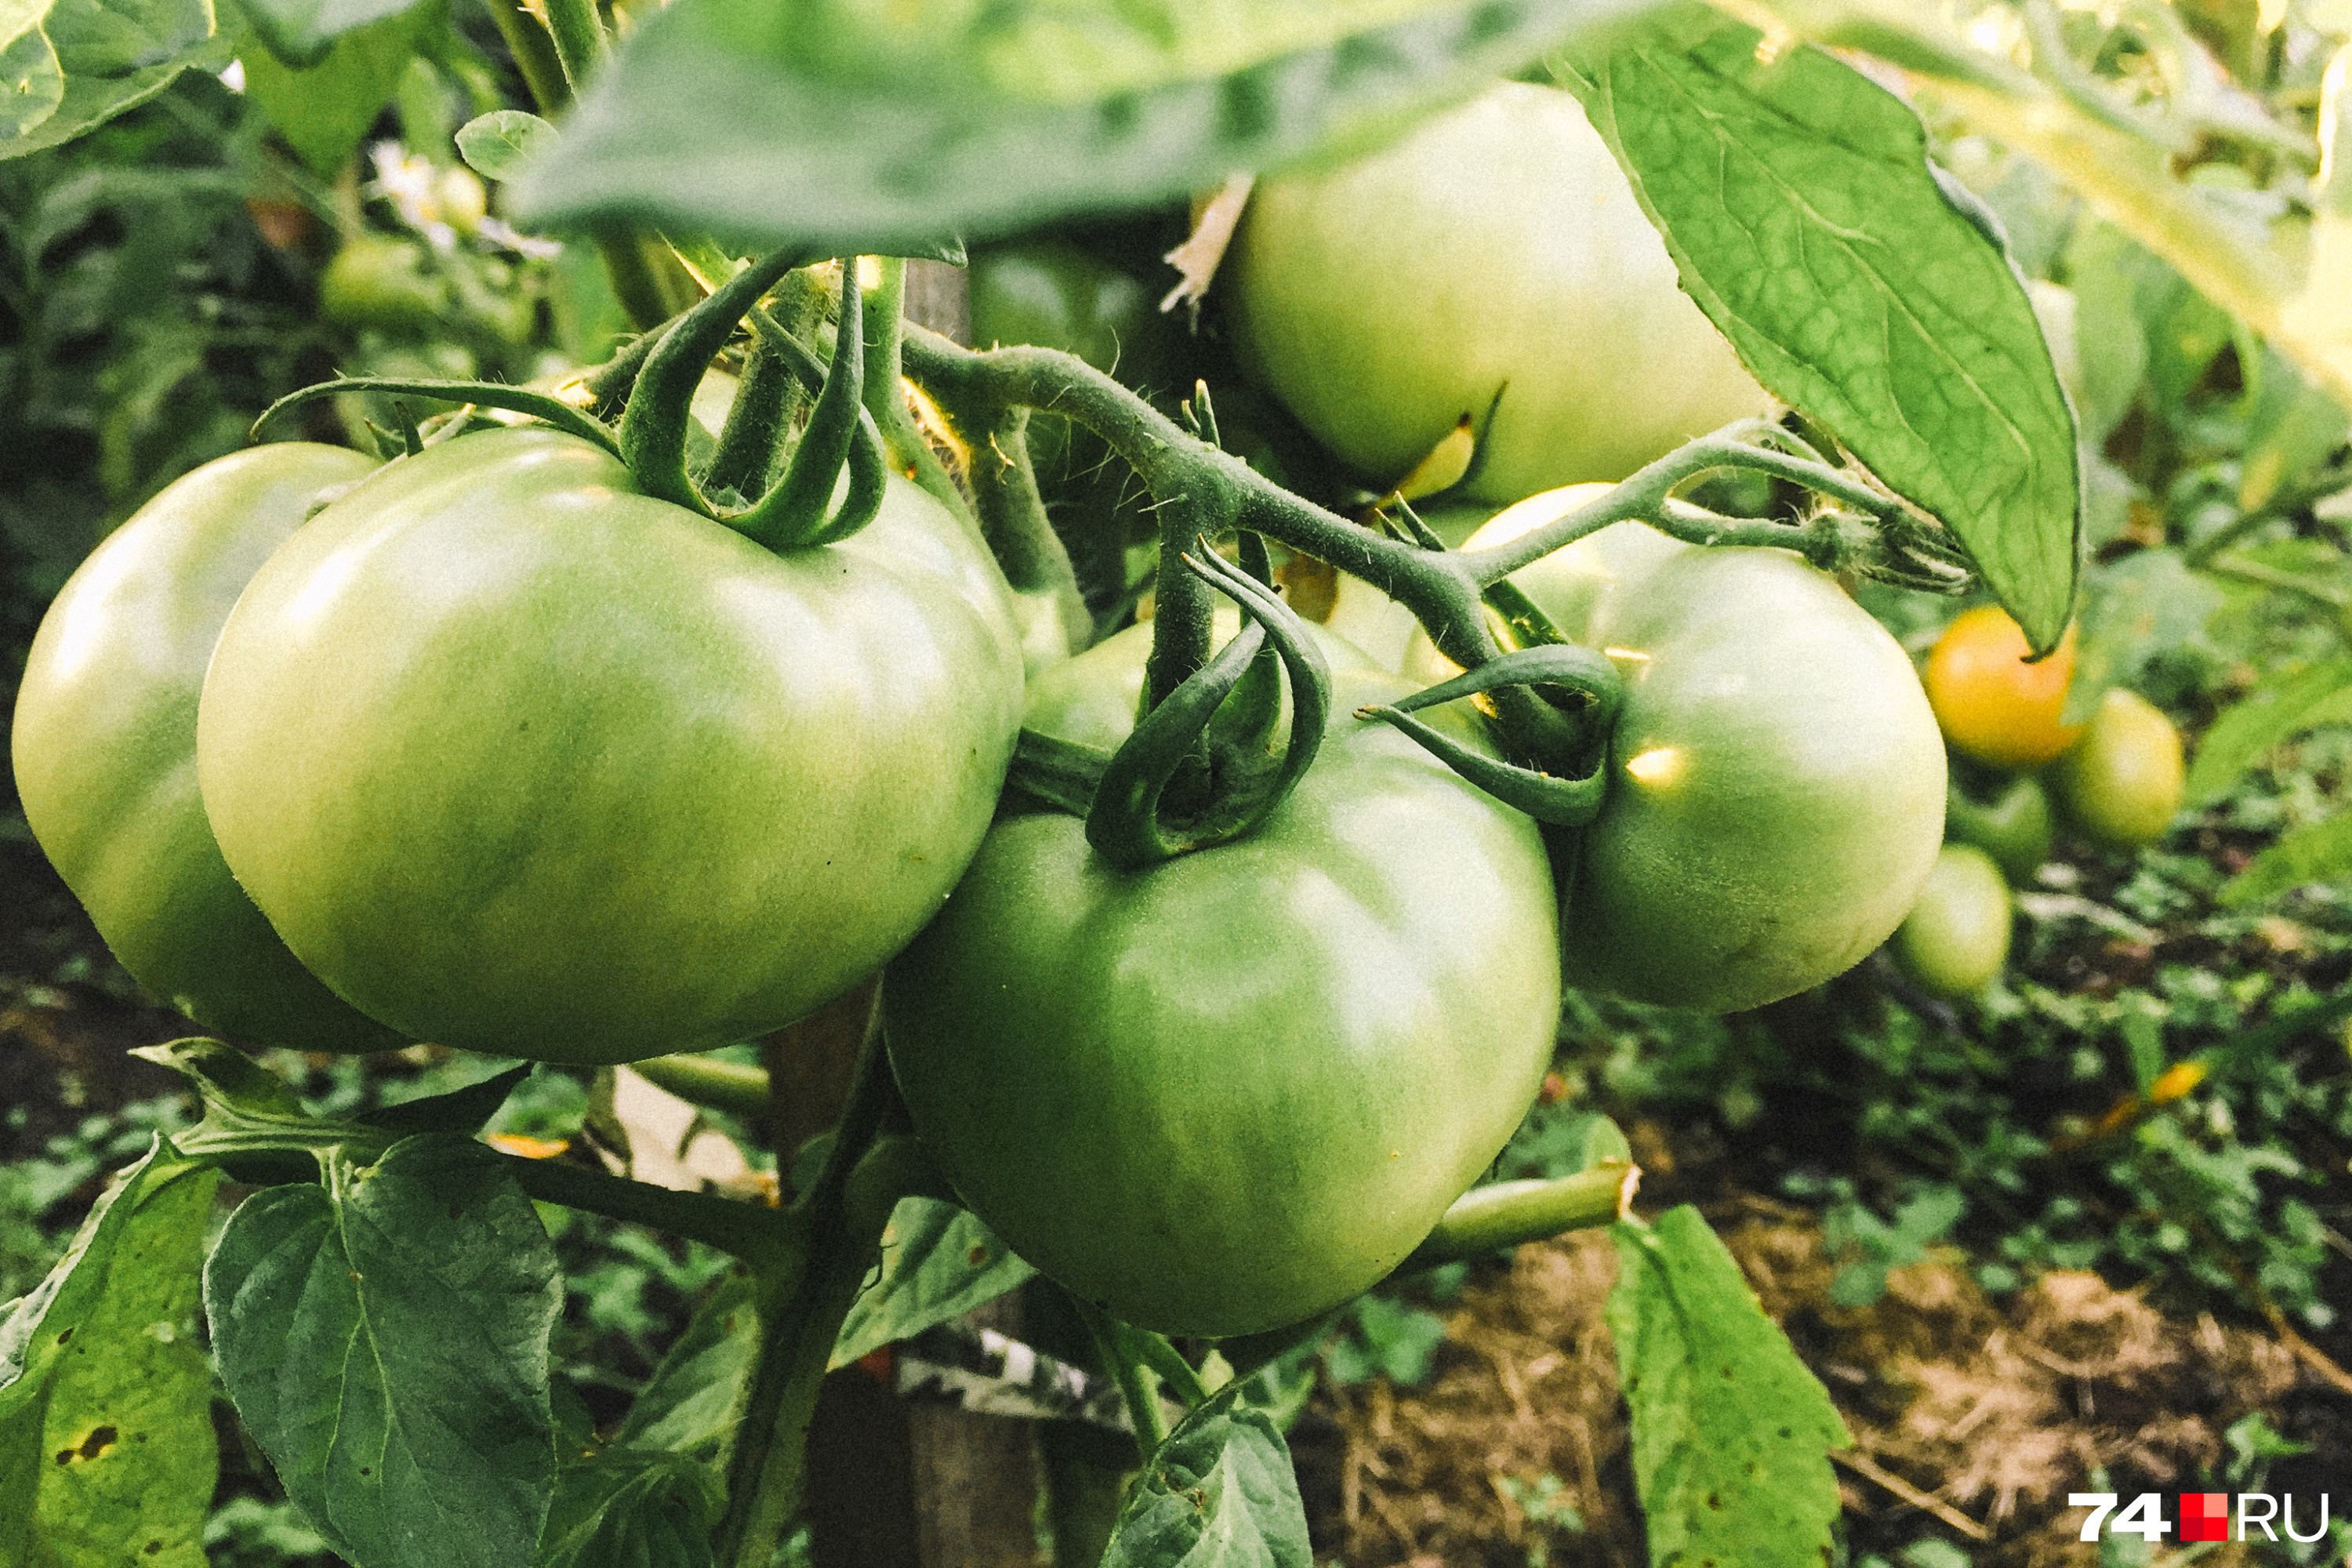 Как правильно выращивать помидоры, самые распространенные болезни томатов -22 июля 2021 - mgorsk.ru